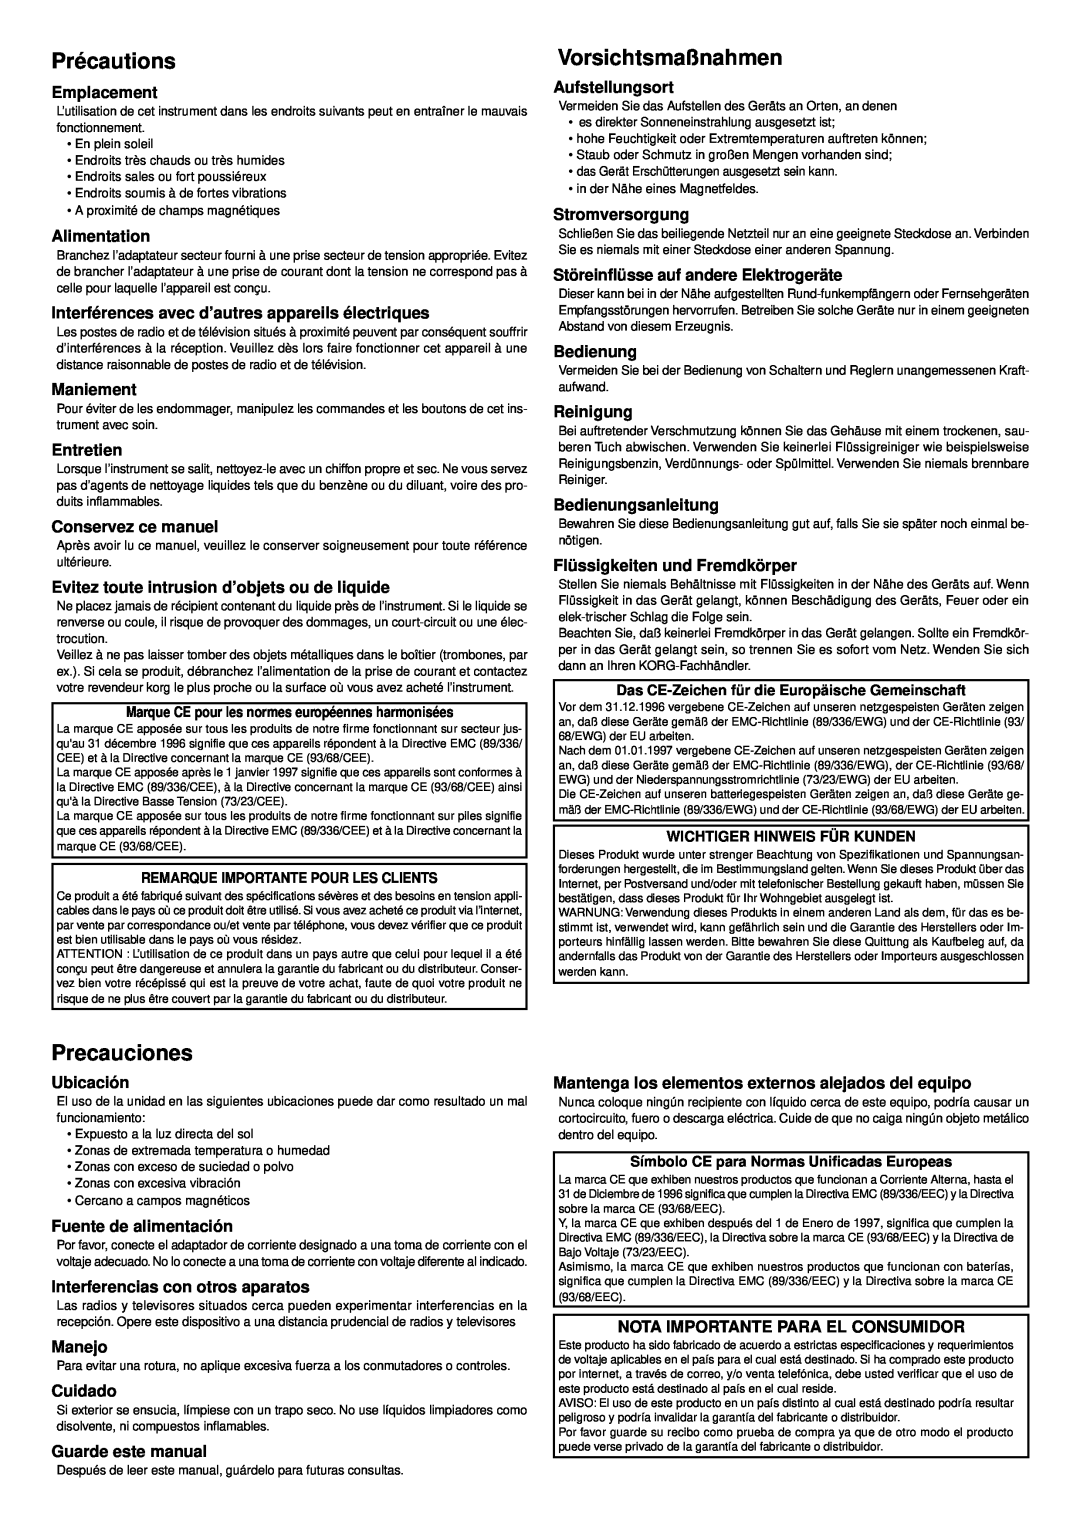 Vox Cooltron owner manual Précautions, Vorsichtsmaßnahmen, Precauciones 